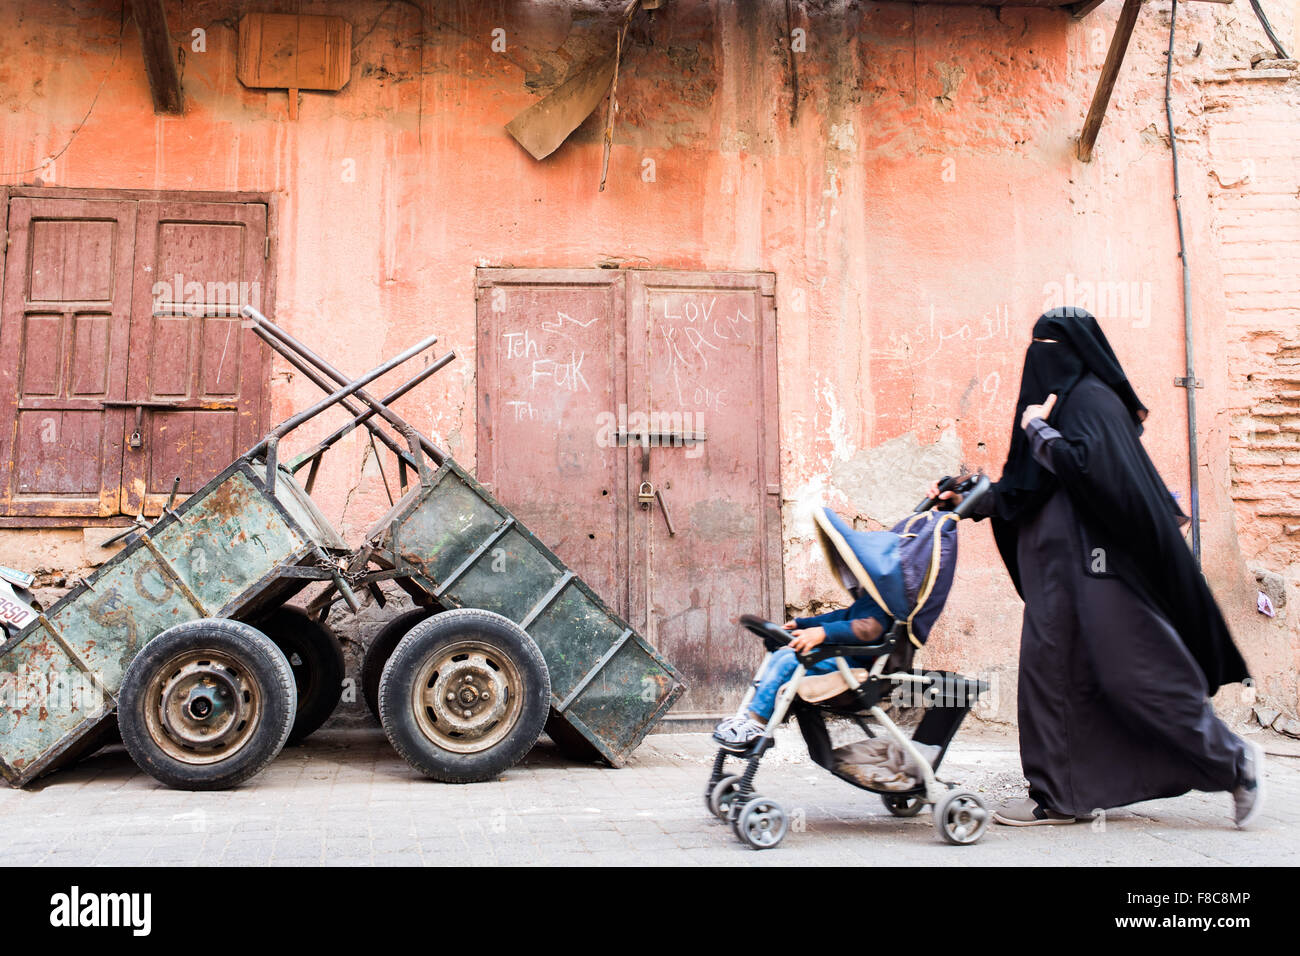 La photographie de rue. Femme musulmane portant un voile intégral noir poussant une poussette passé certains chariots rouillés Banque D'Images